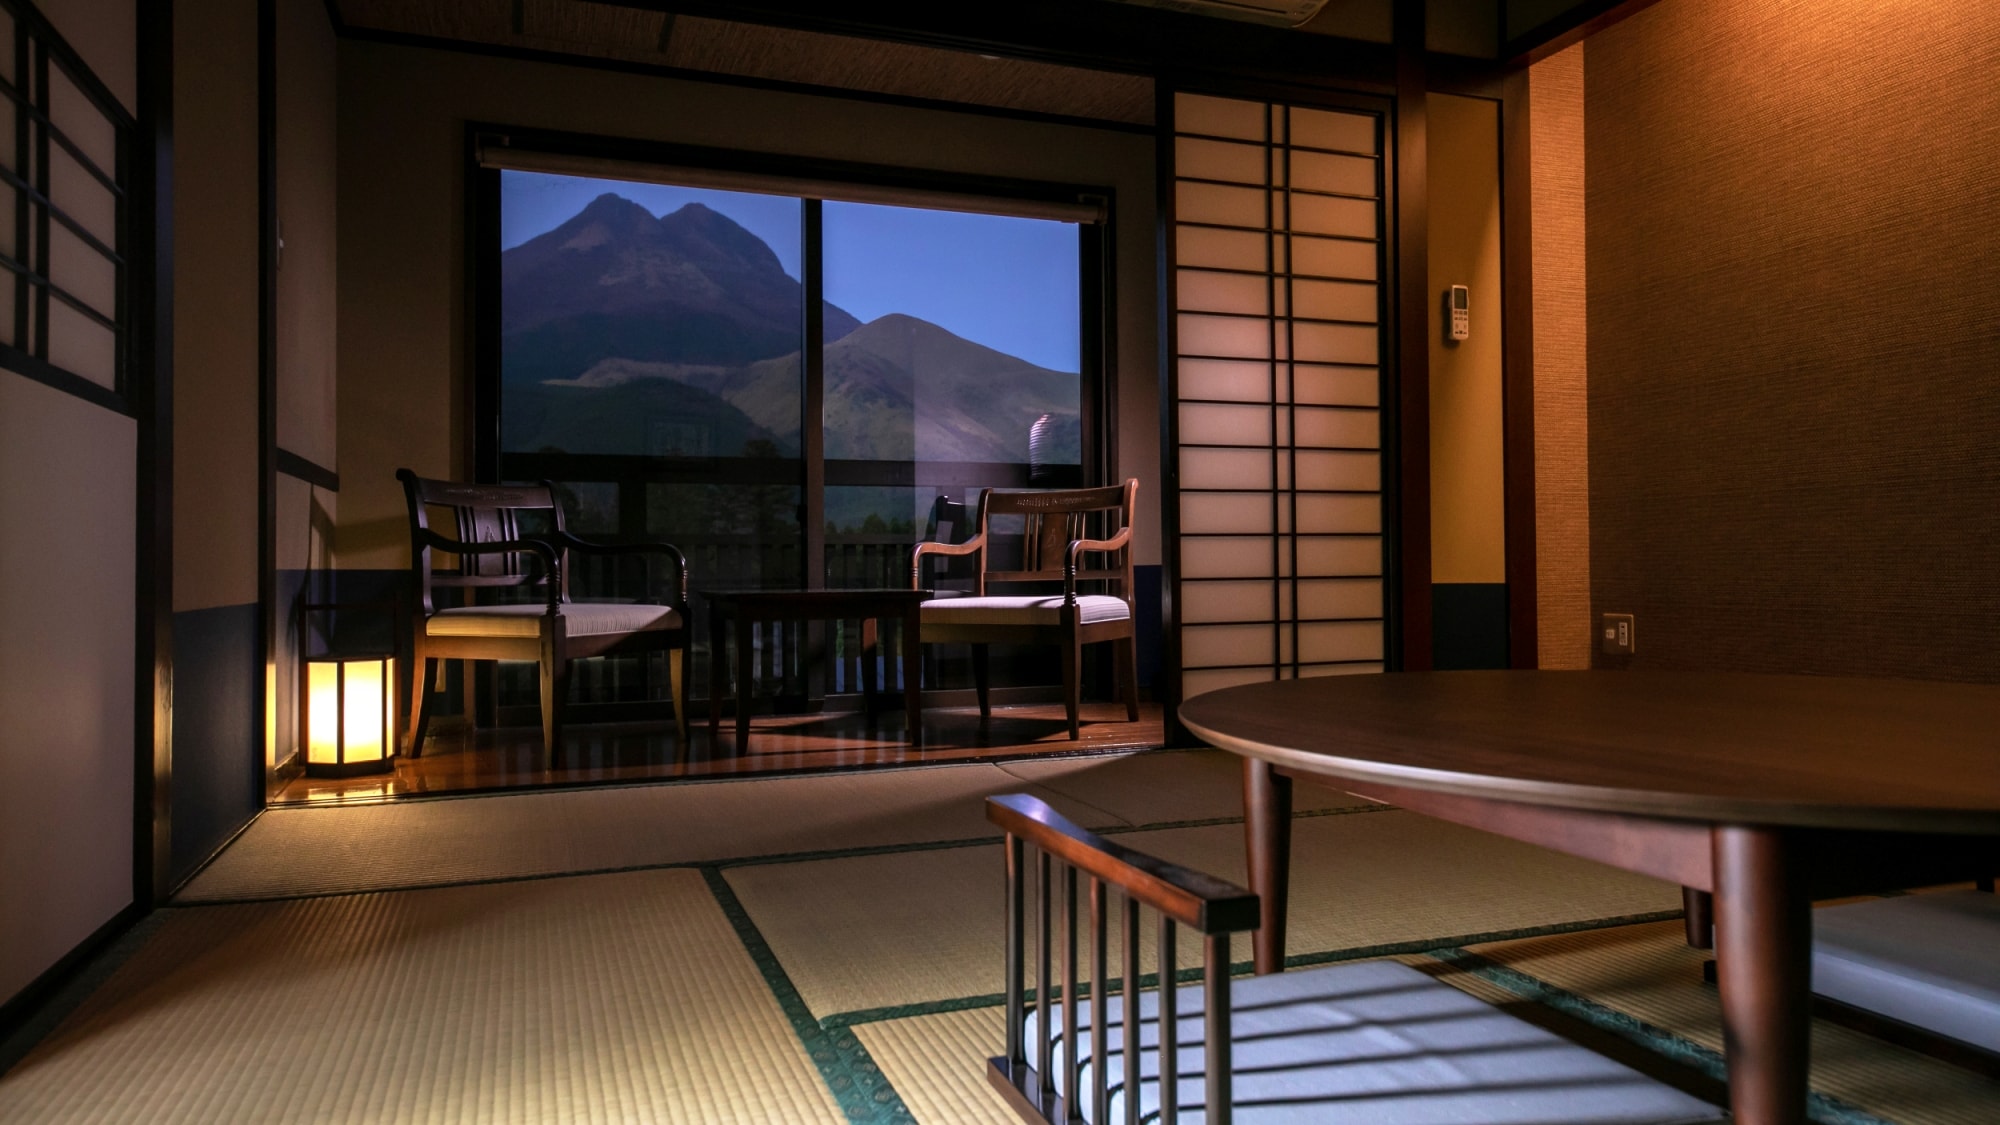 [Kamar tamu di sisi Yufudake] Anda dapat melihat "Yufudake" yang megah, yang dapat dikatakan sebagai simbol Yufuin, dari jendela.